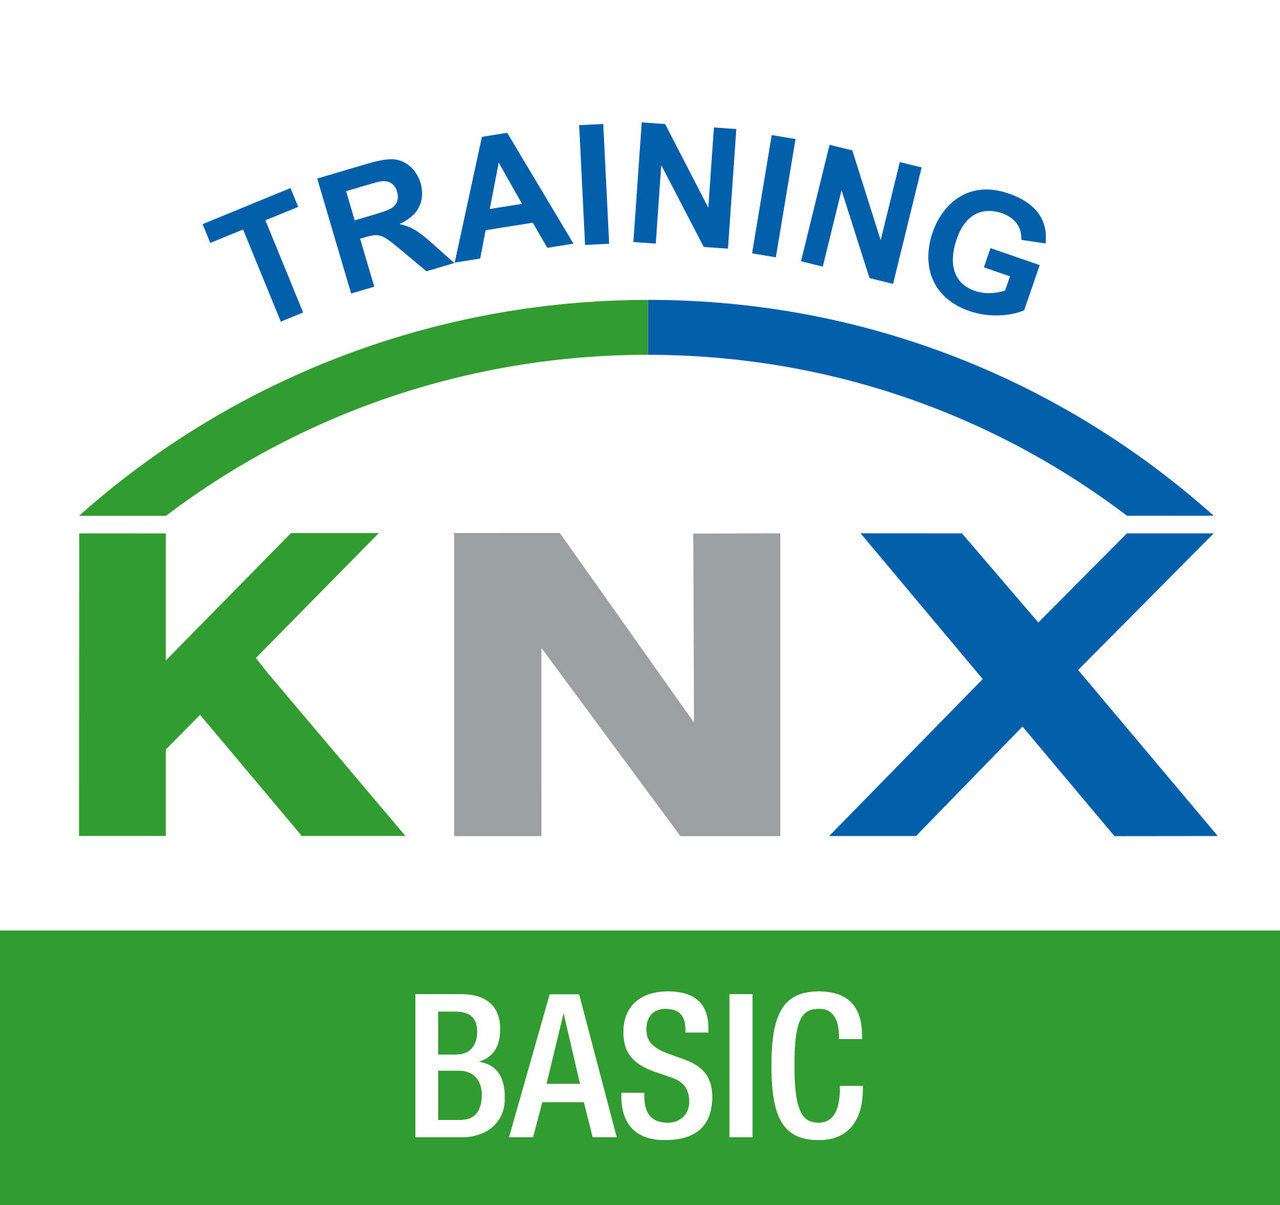 KNX Training BASIC logo